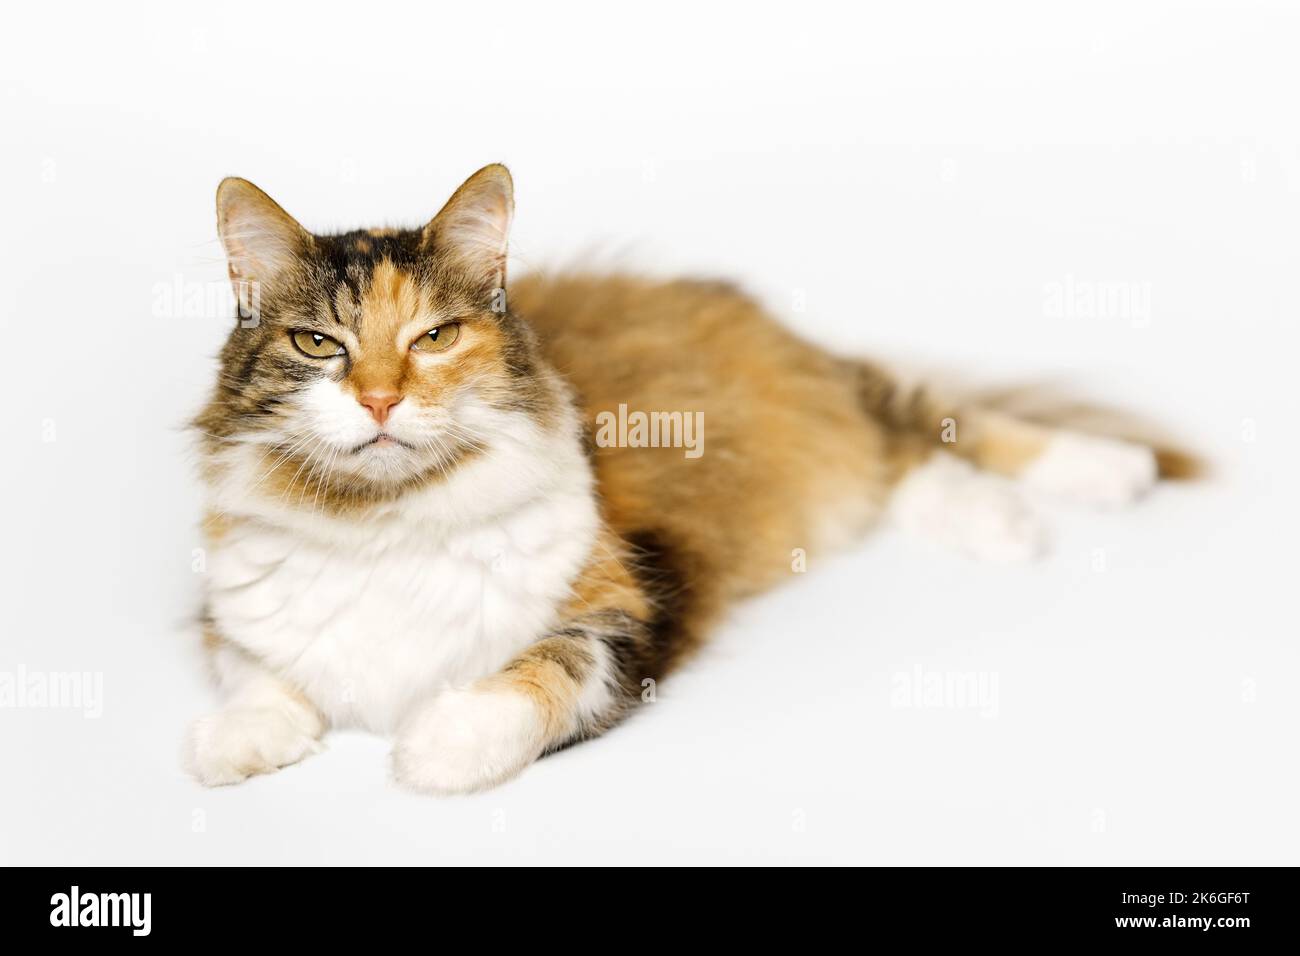 Le Calico Cat à trois longues fourrures colorées est couché, regardant l'appareil photo sur fond gris clair. Banque D'Images